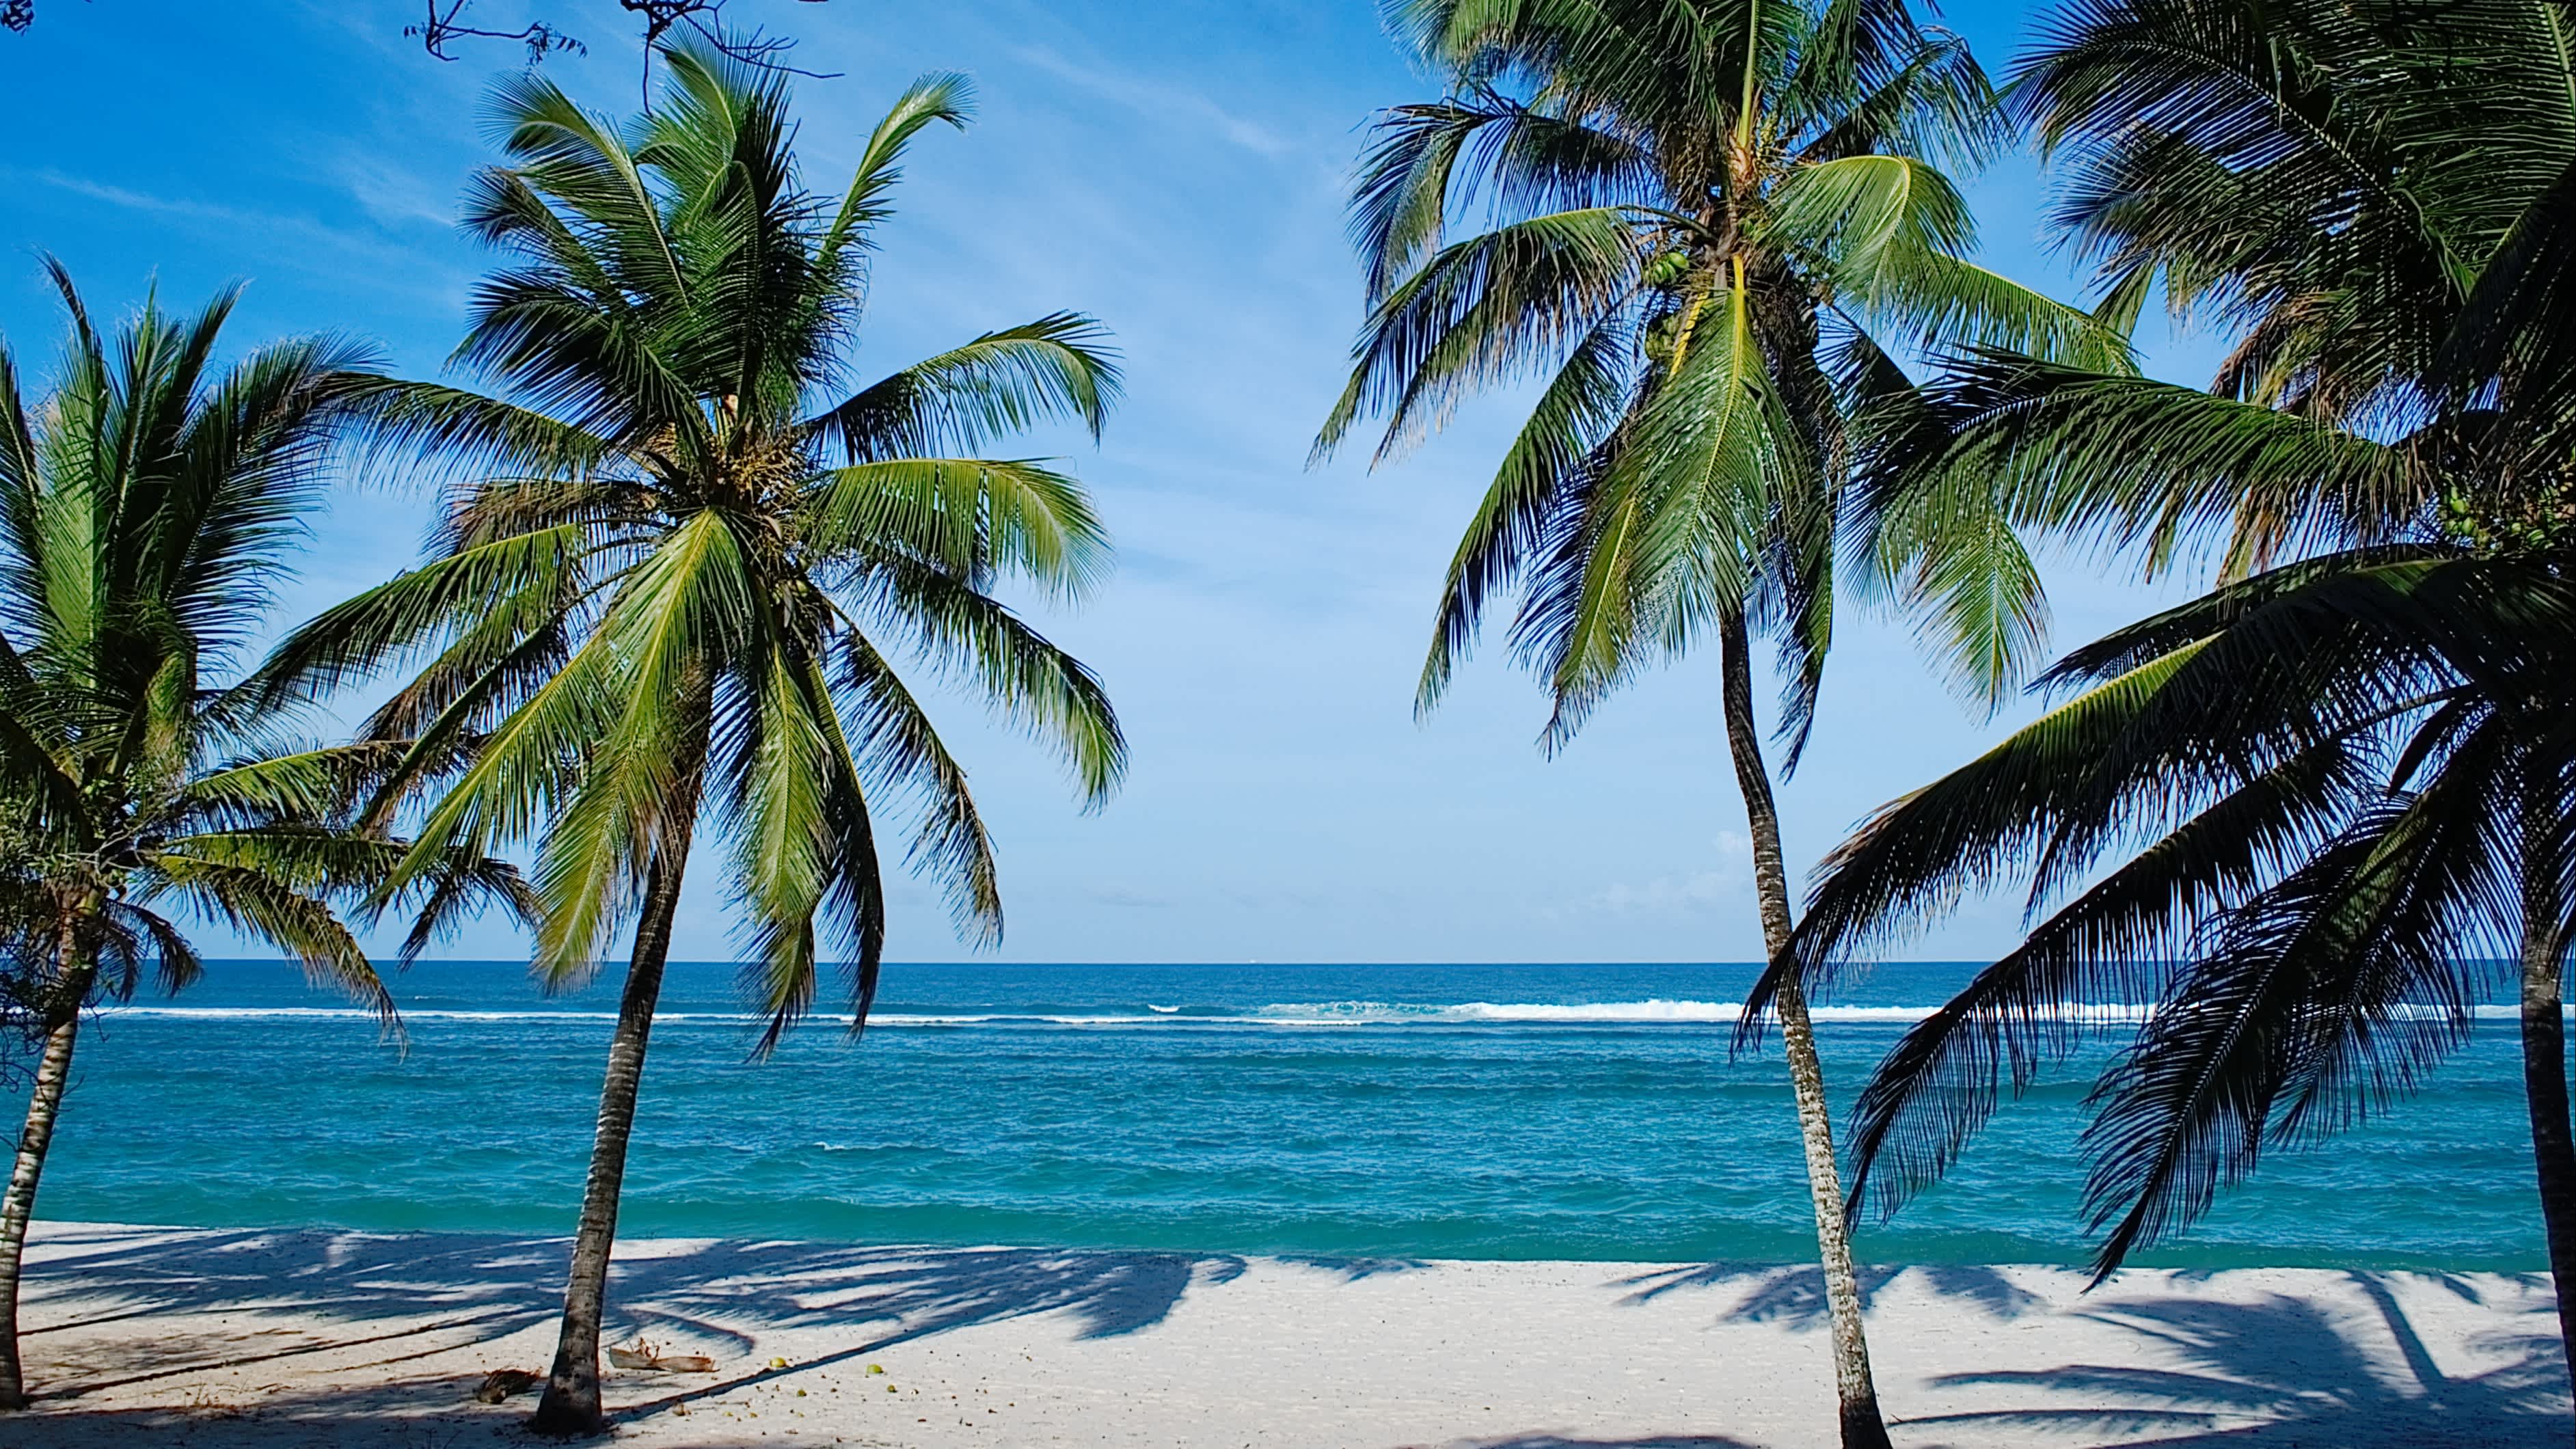 Der tropische Traumstrand Tiwi Beach mit Palmen, weißem Sand und blauem Meer bei Sonnenschein.